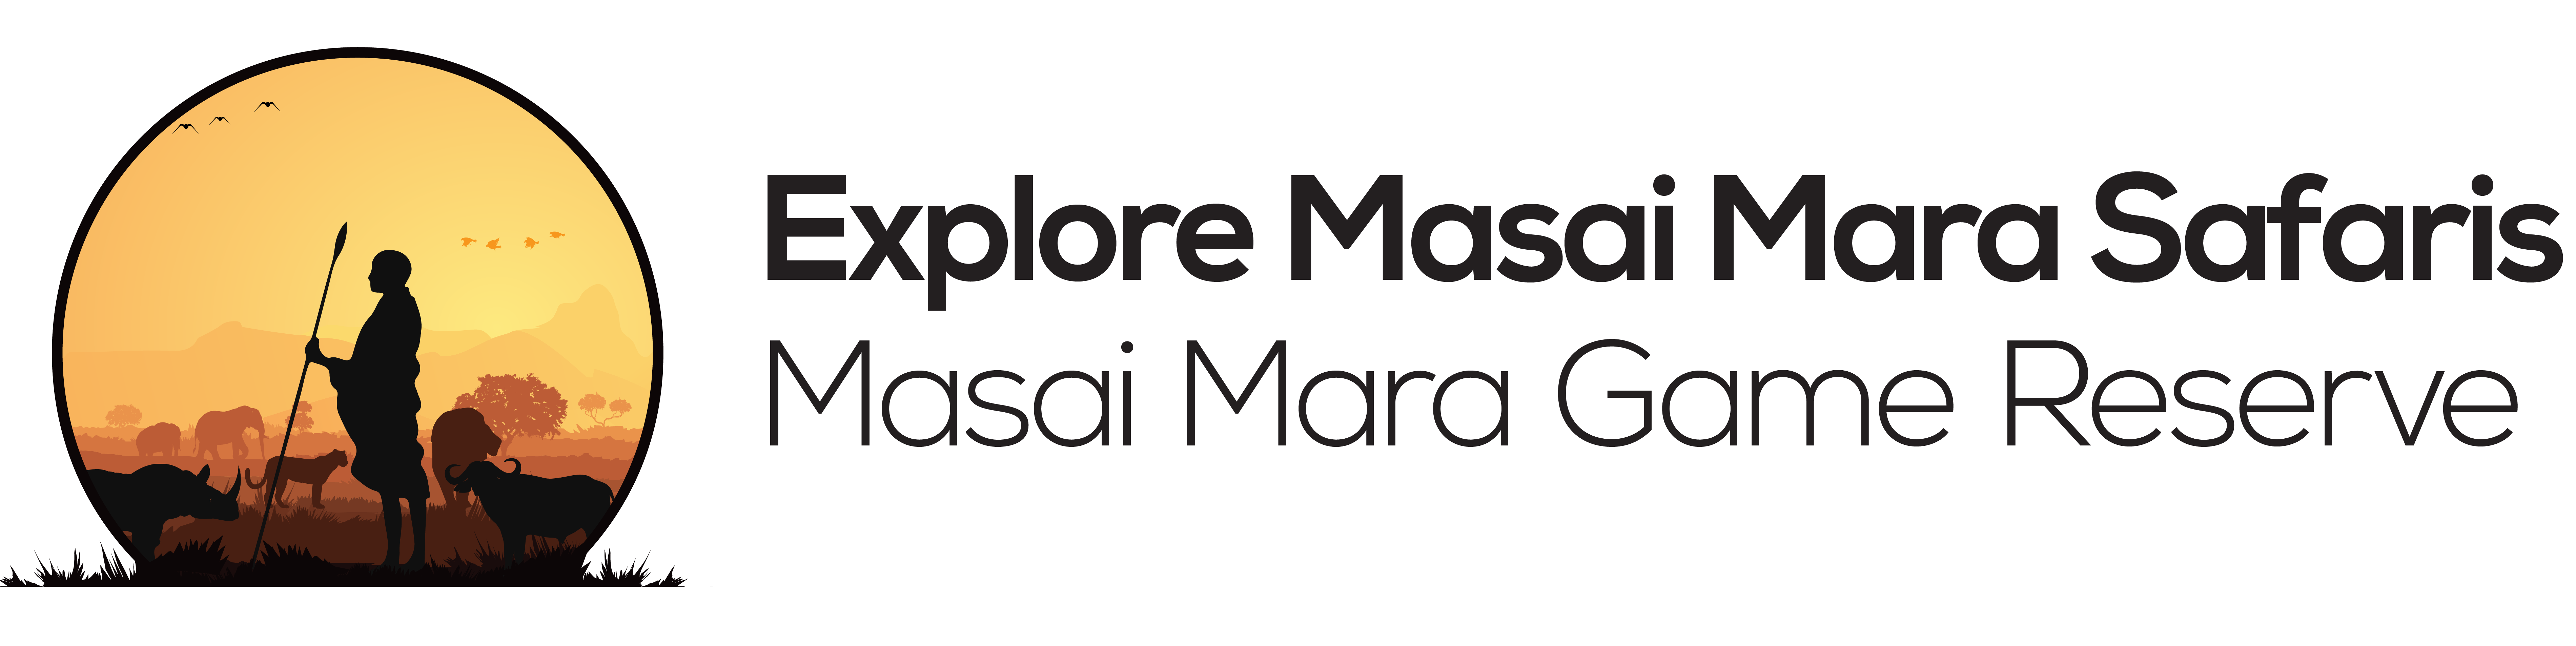 Explore masai mara | Experience the abundant wildlife